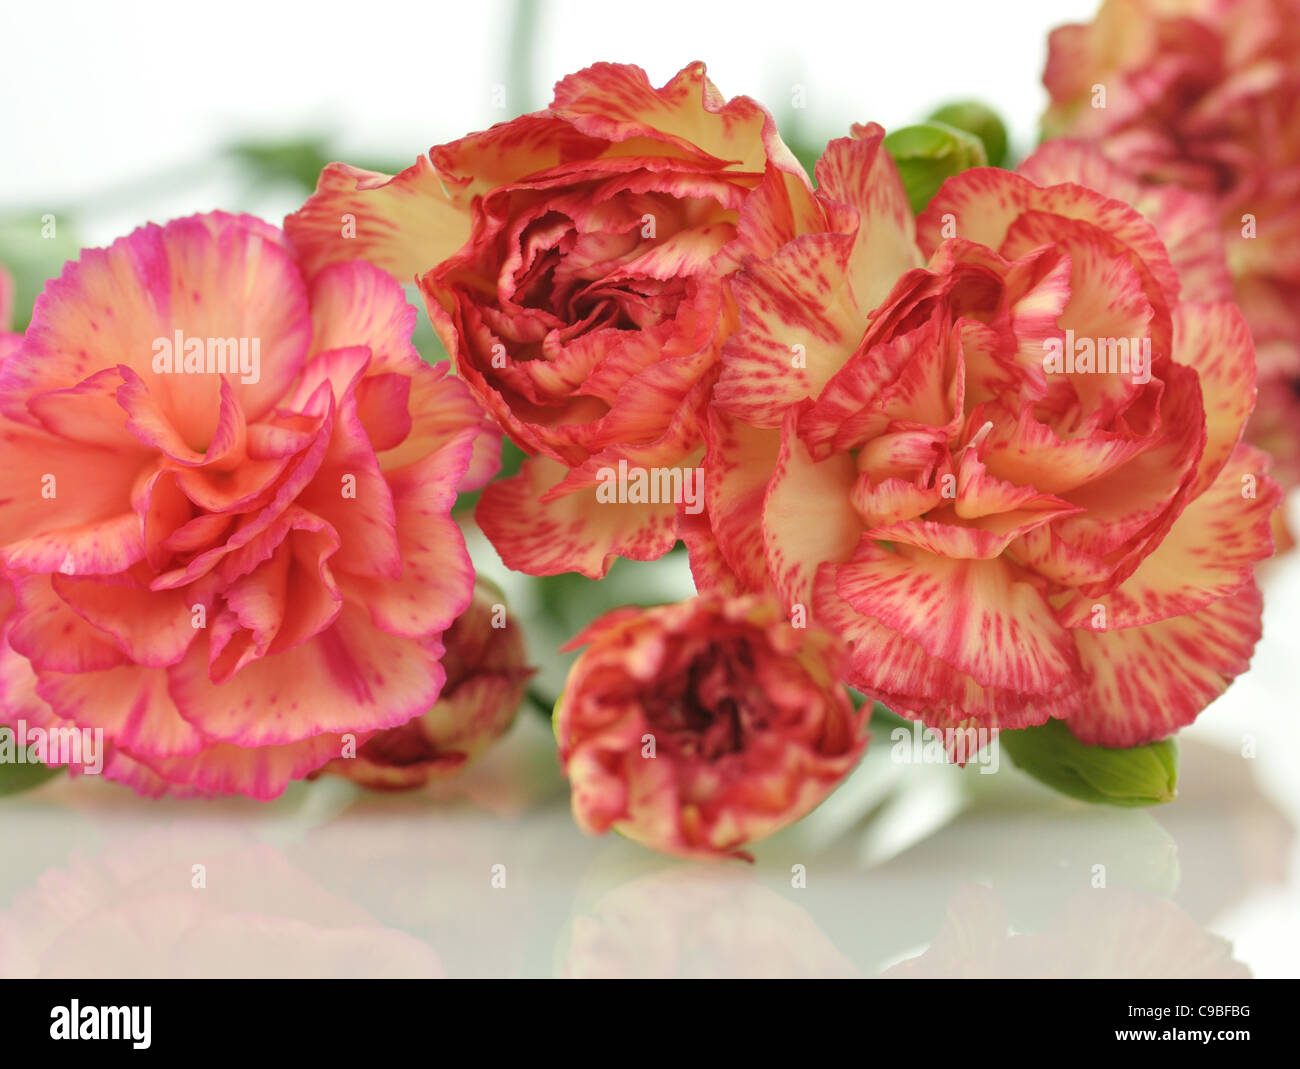 Rosa e Rosso dei fiori di garofano , close up shot Foto Stock